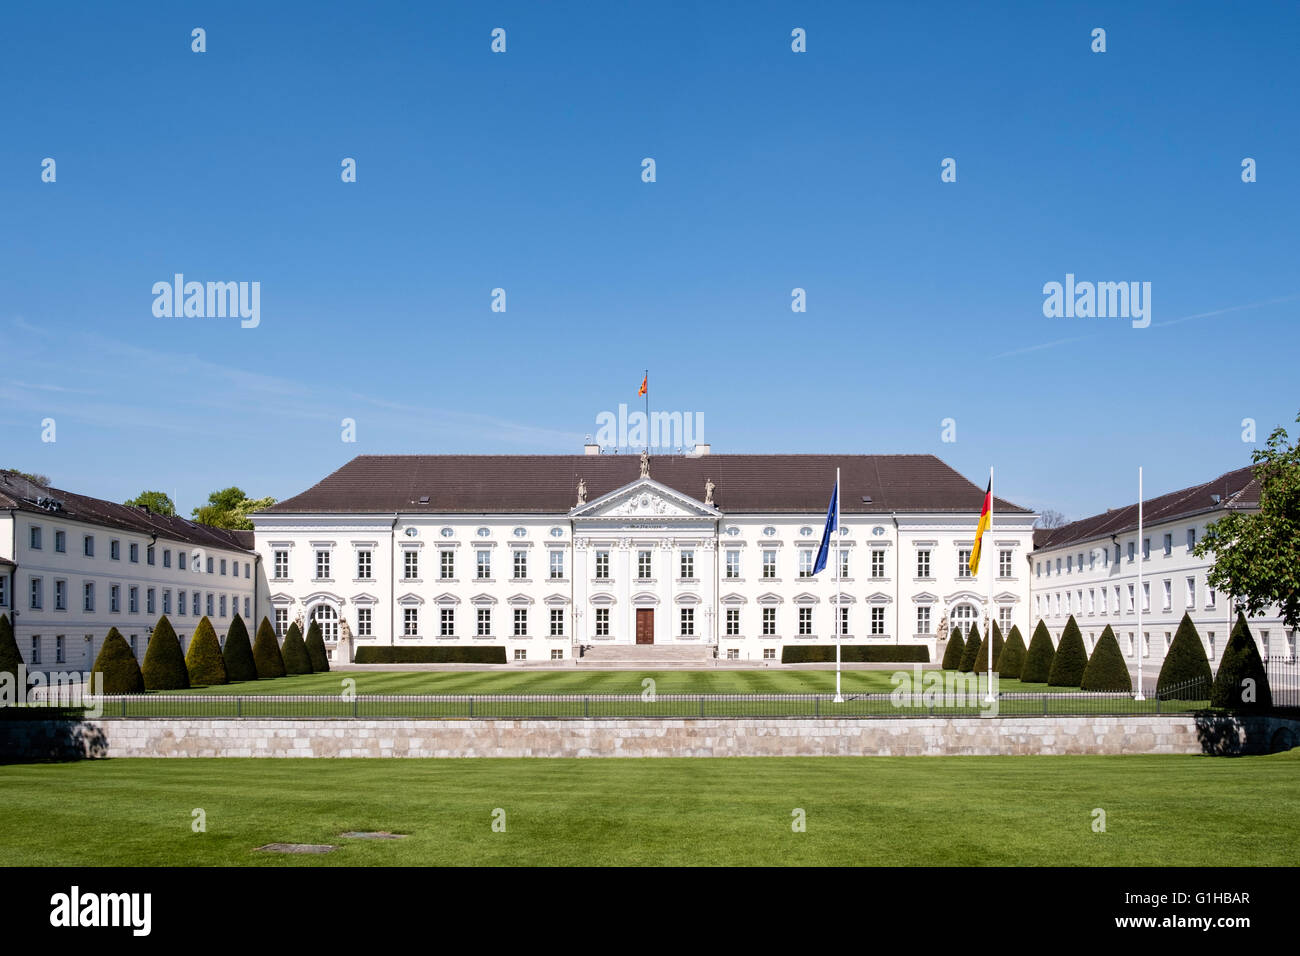 Le château de Bellevue accueil du président de l'Allemagne à Berlin en Allemagne. Banque D'Images